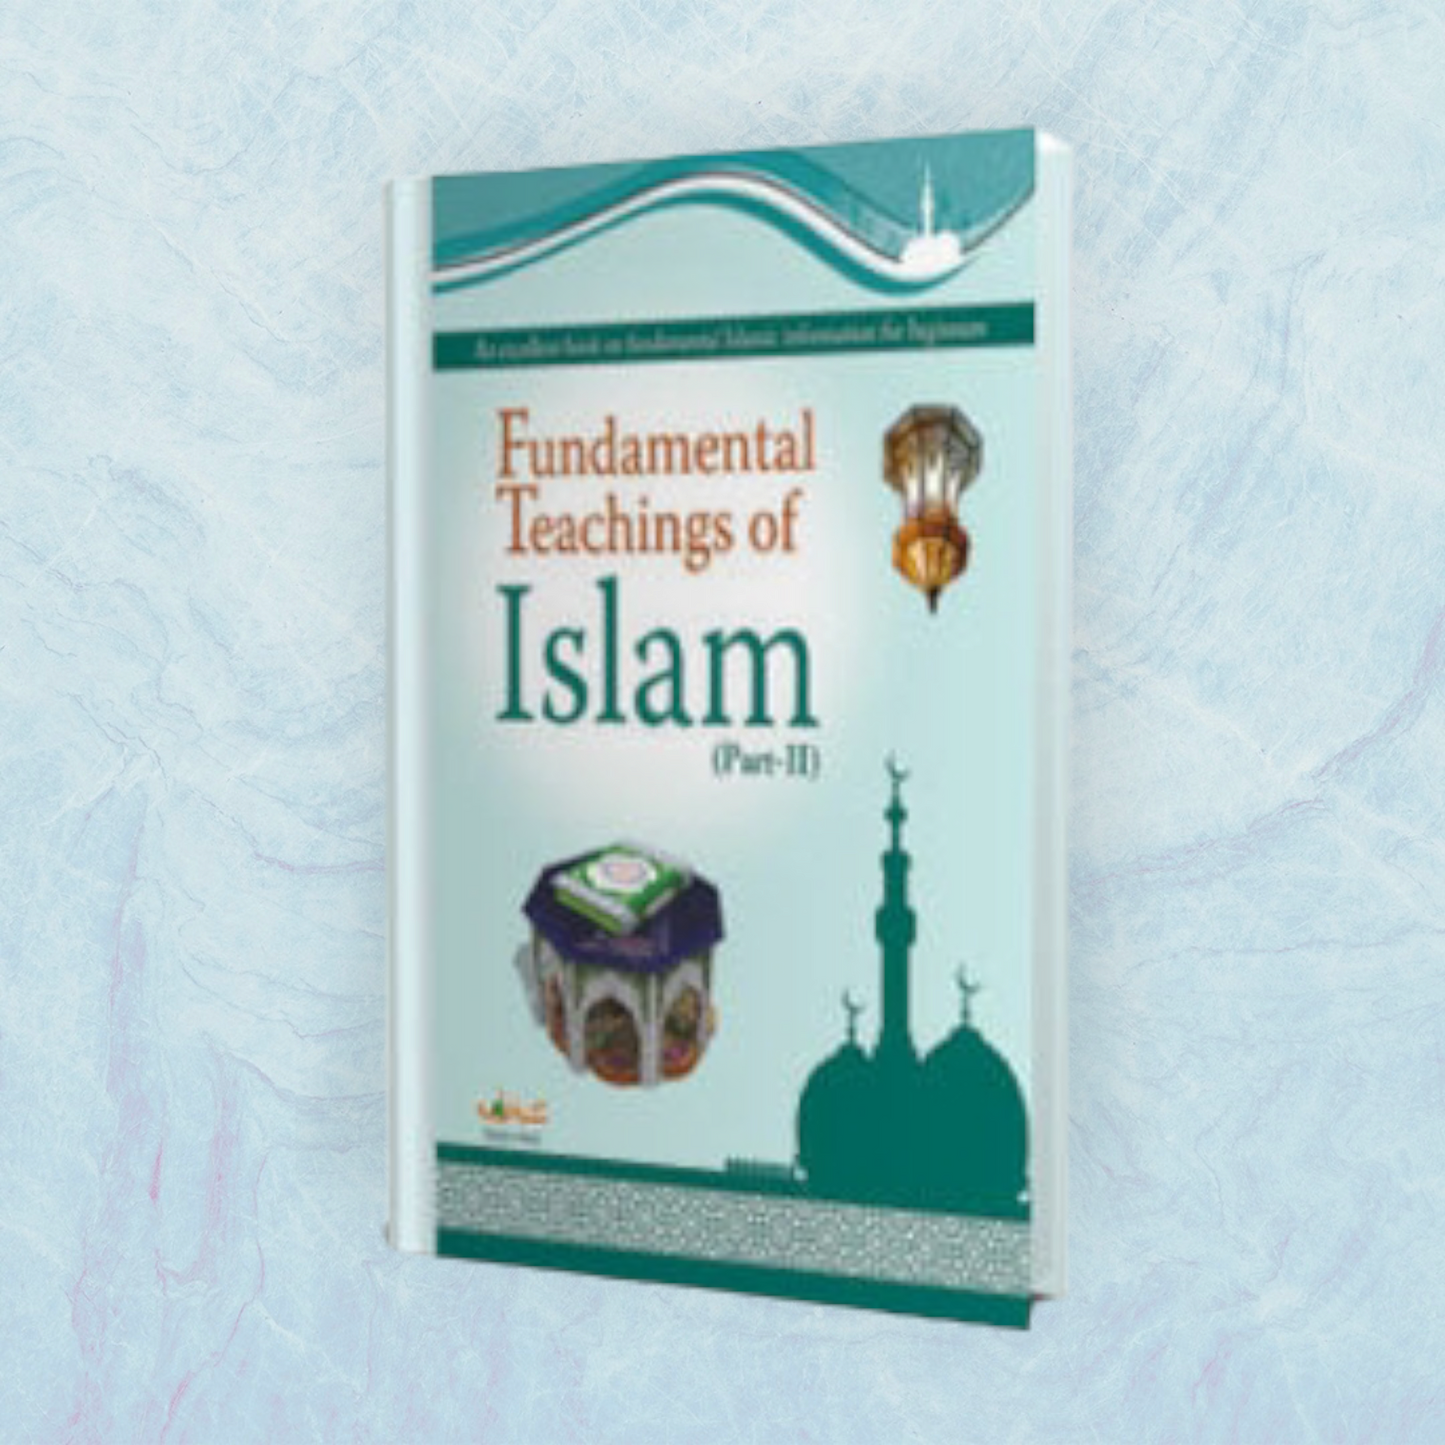 Fundamental Teachings of Islam (Part 1 - 2 - 3)